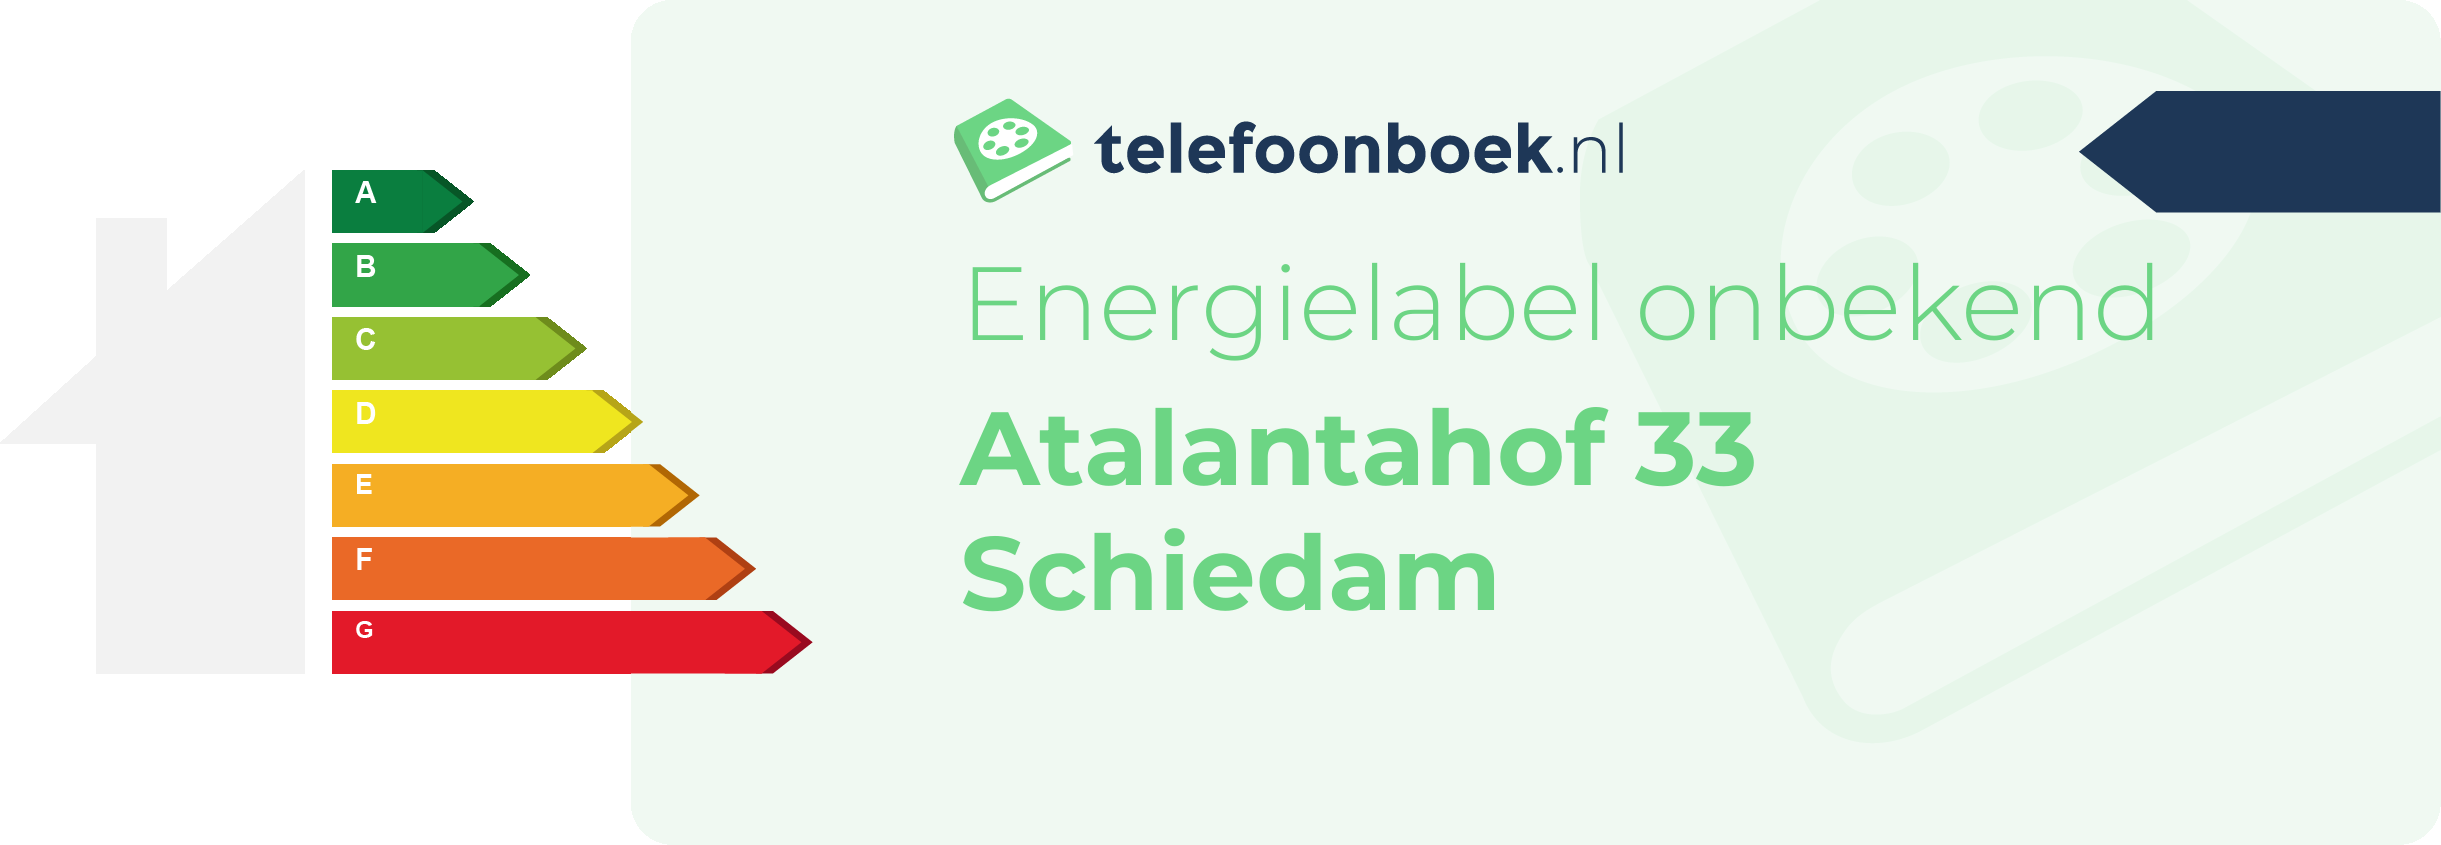 Energielabel Atalantahof 33 Schiedam